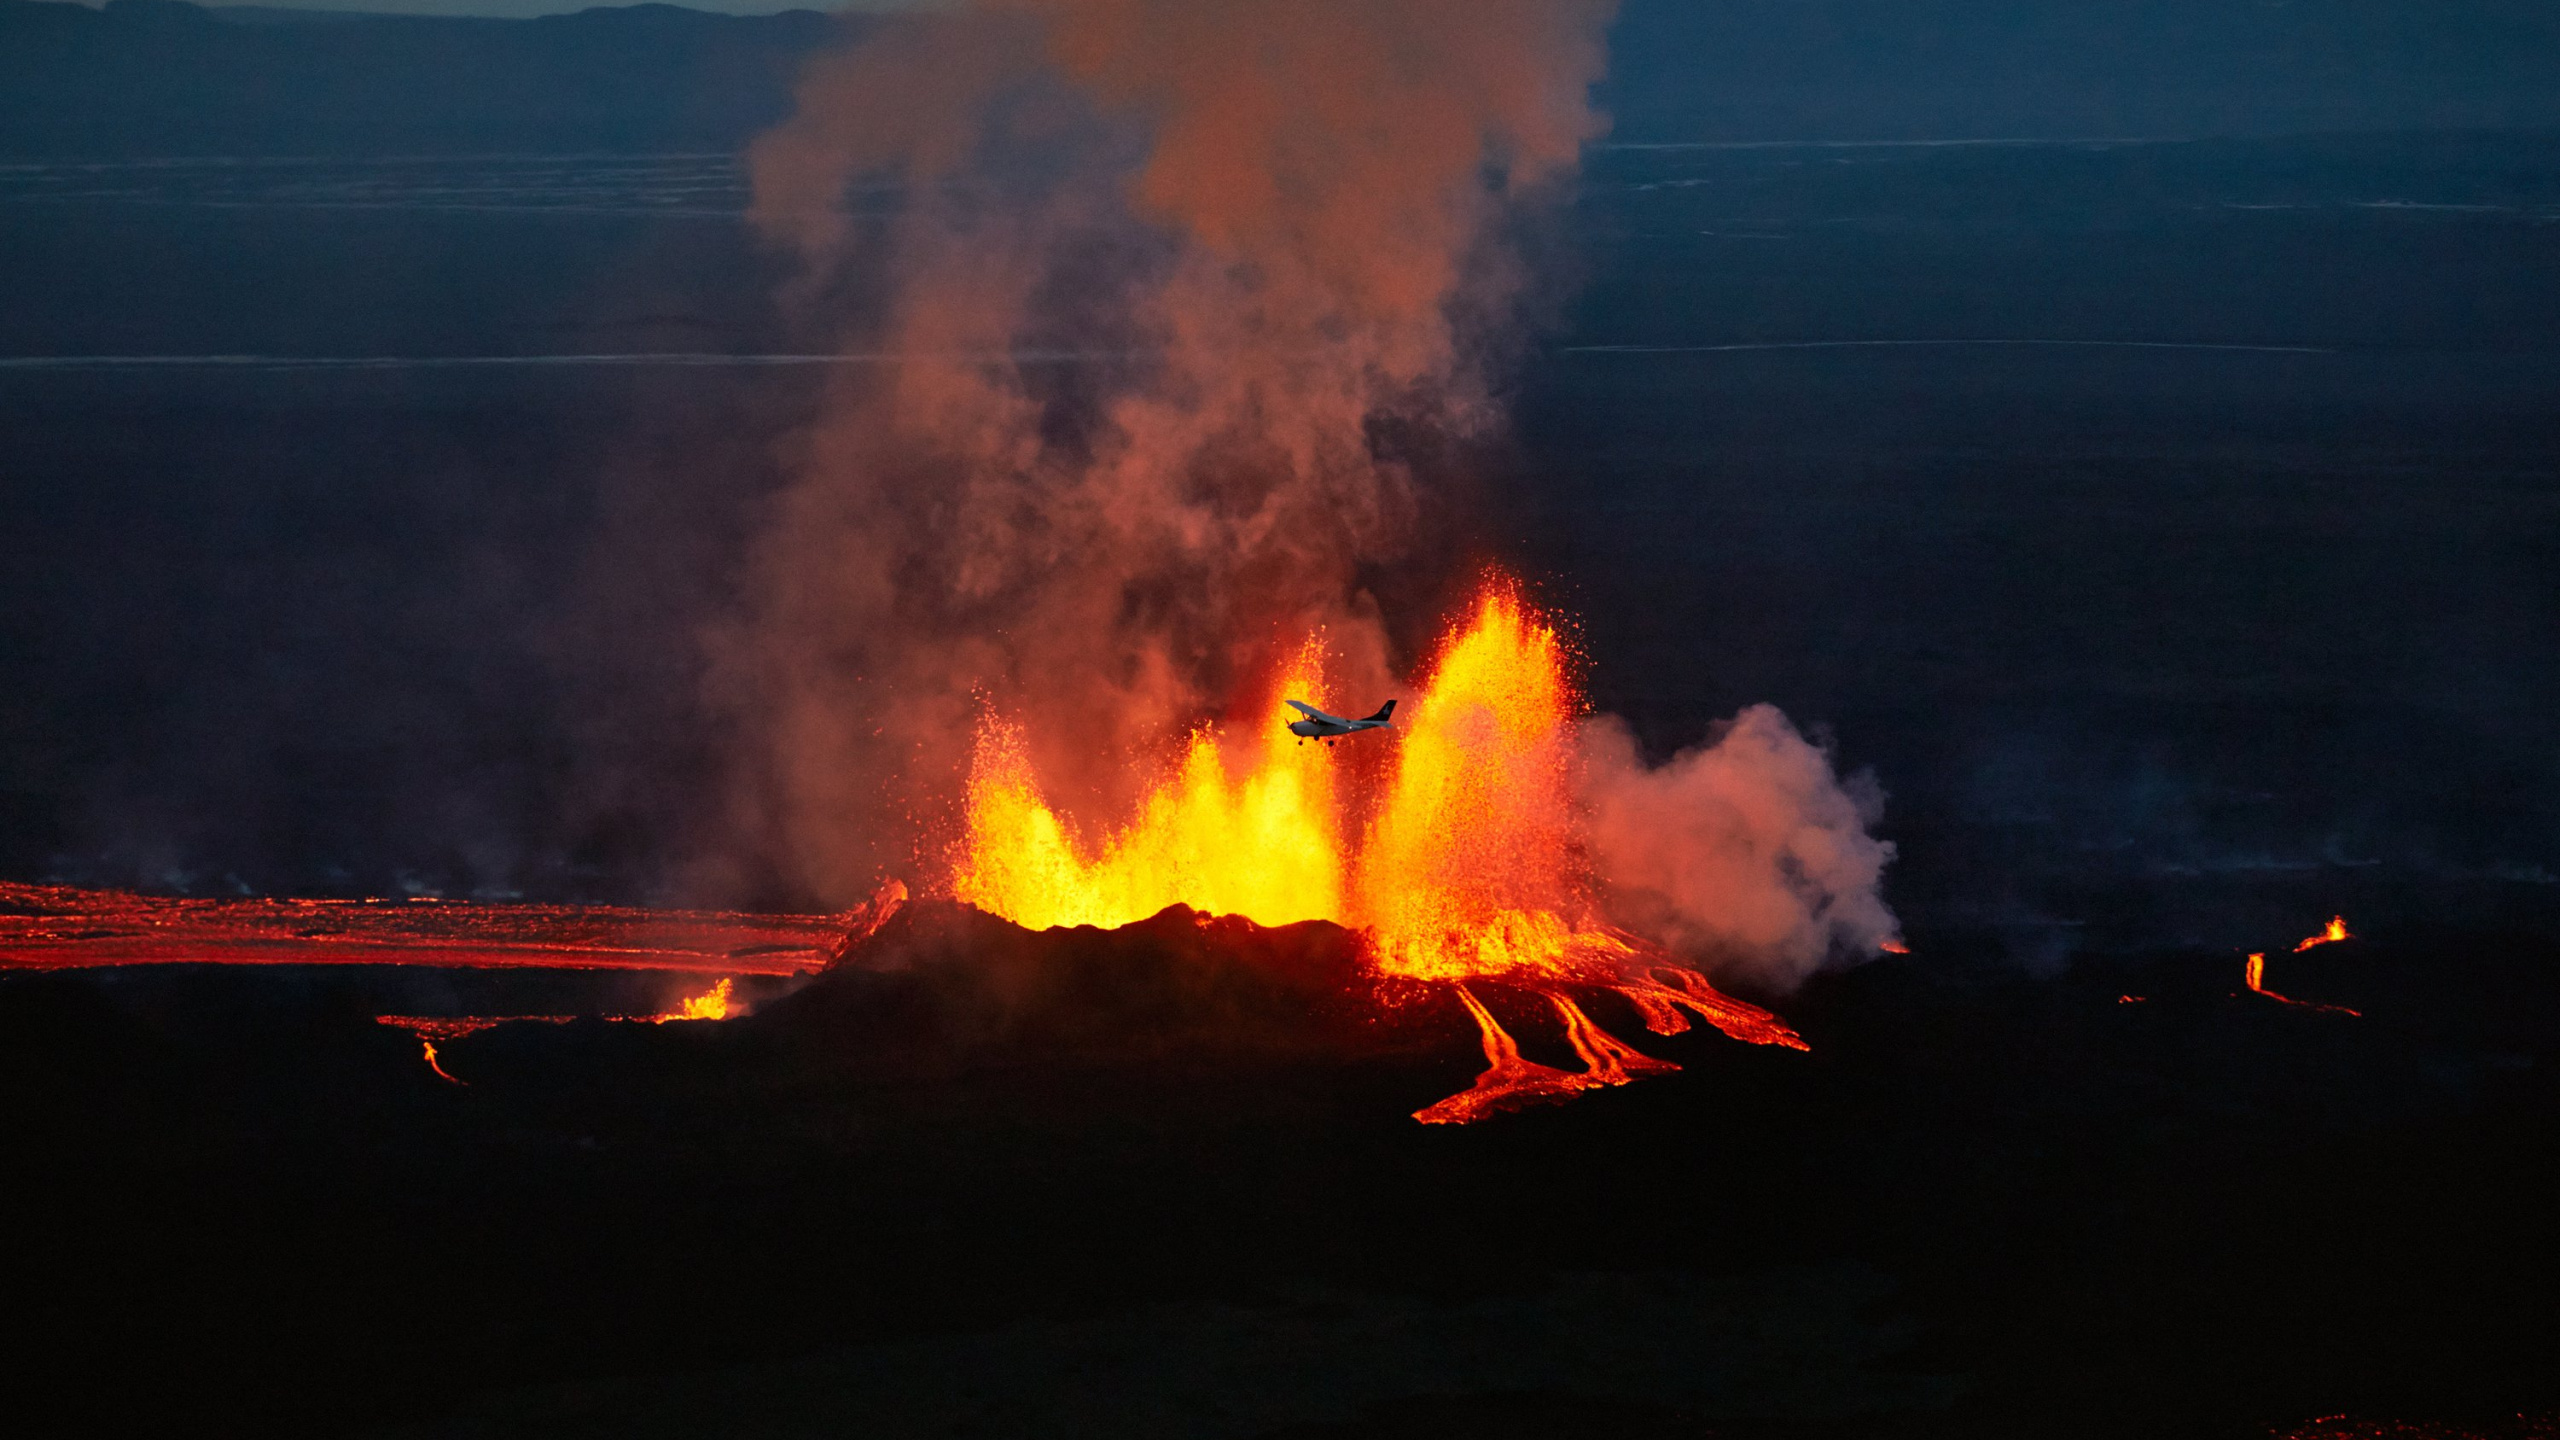 Holuhraun, 热, 火山的地貌, 卡特拉, 屏蔽火山 壁纸 2560x1440 允许